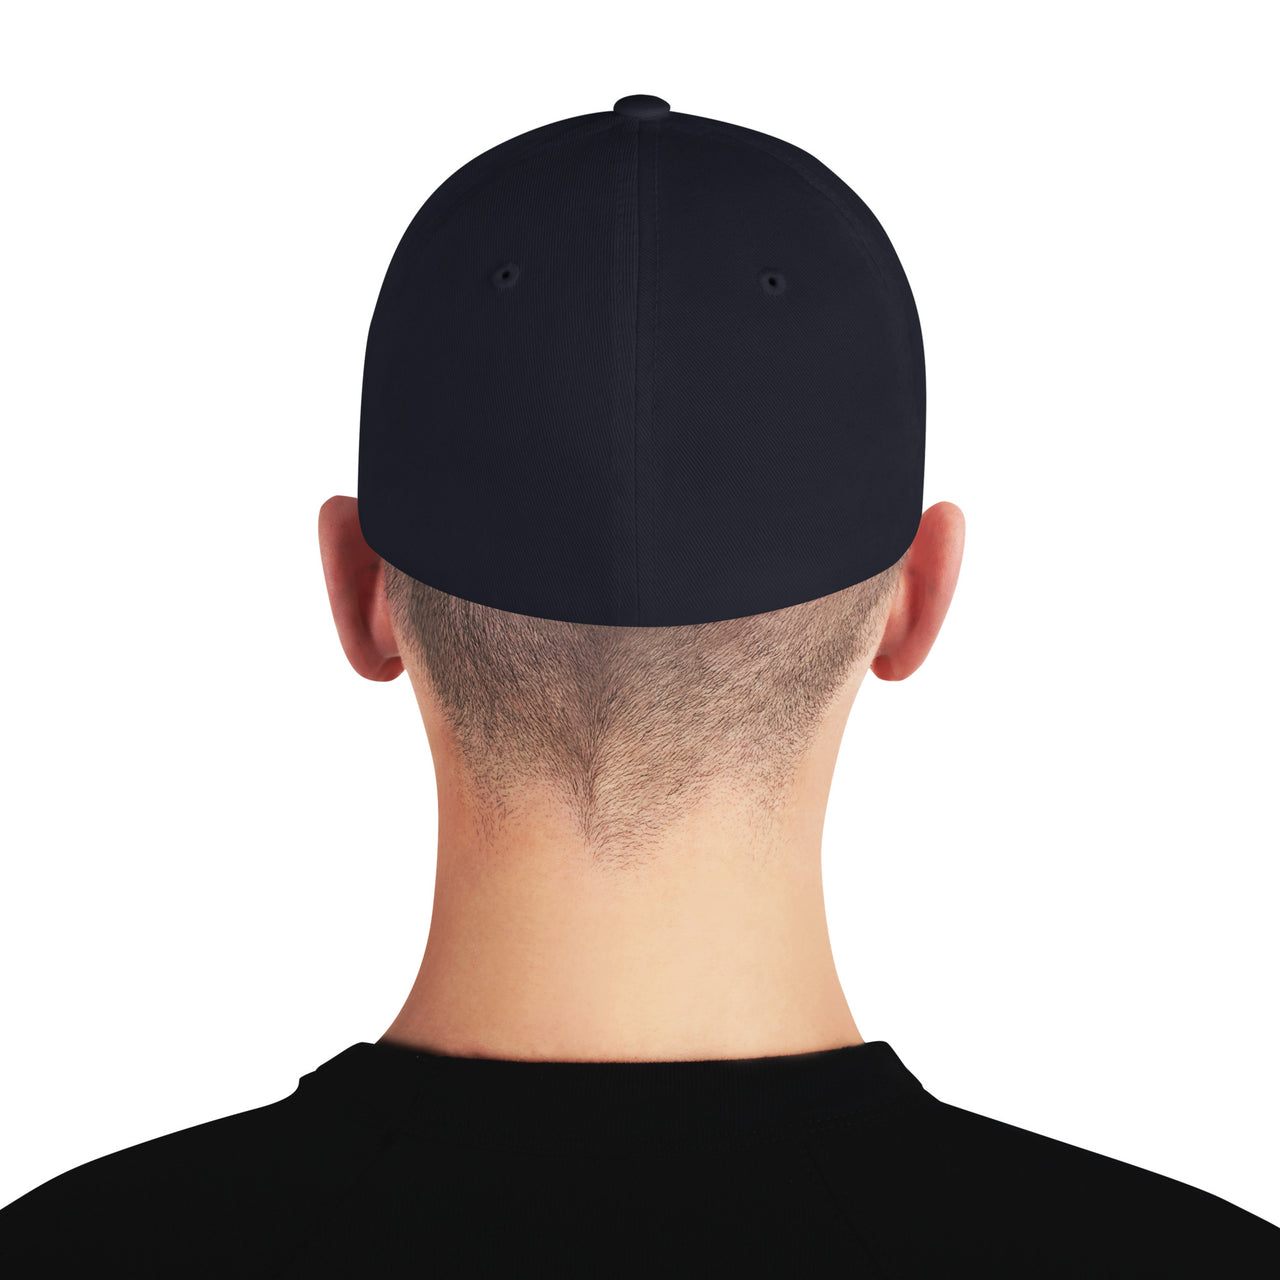 Third Gen Camaro Hat Flexfit Cap modeled in navy back view